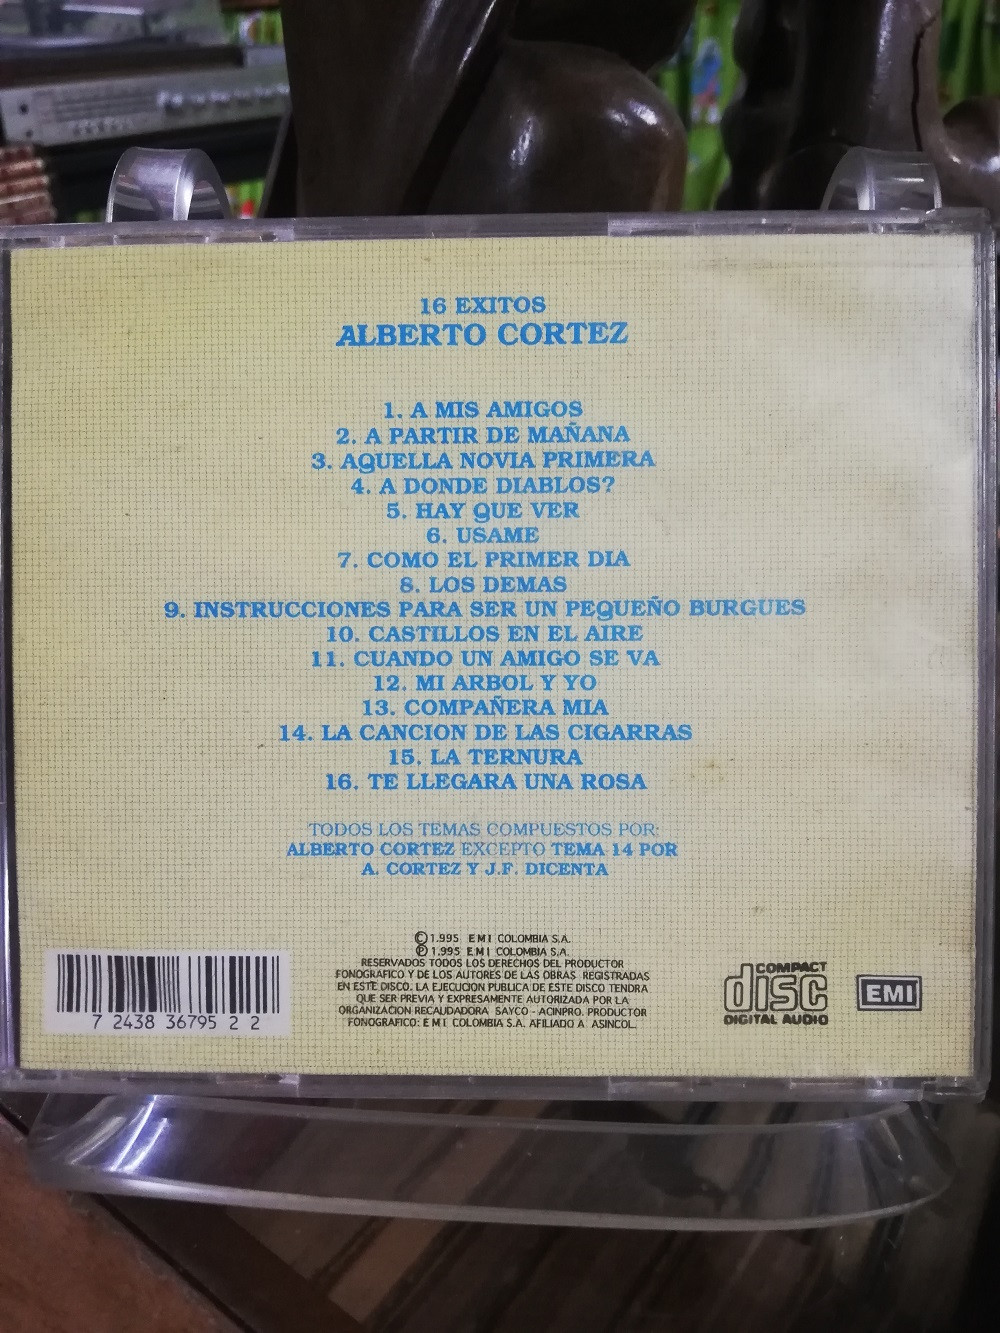 Imagen CD ALBERTO CORTEZ - 16 EXITOS 2